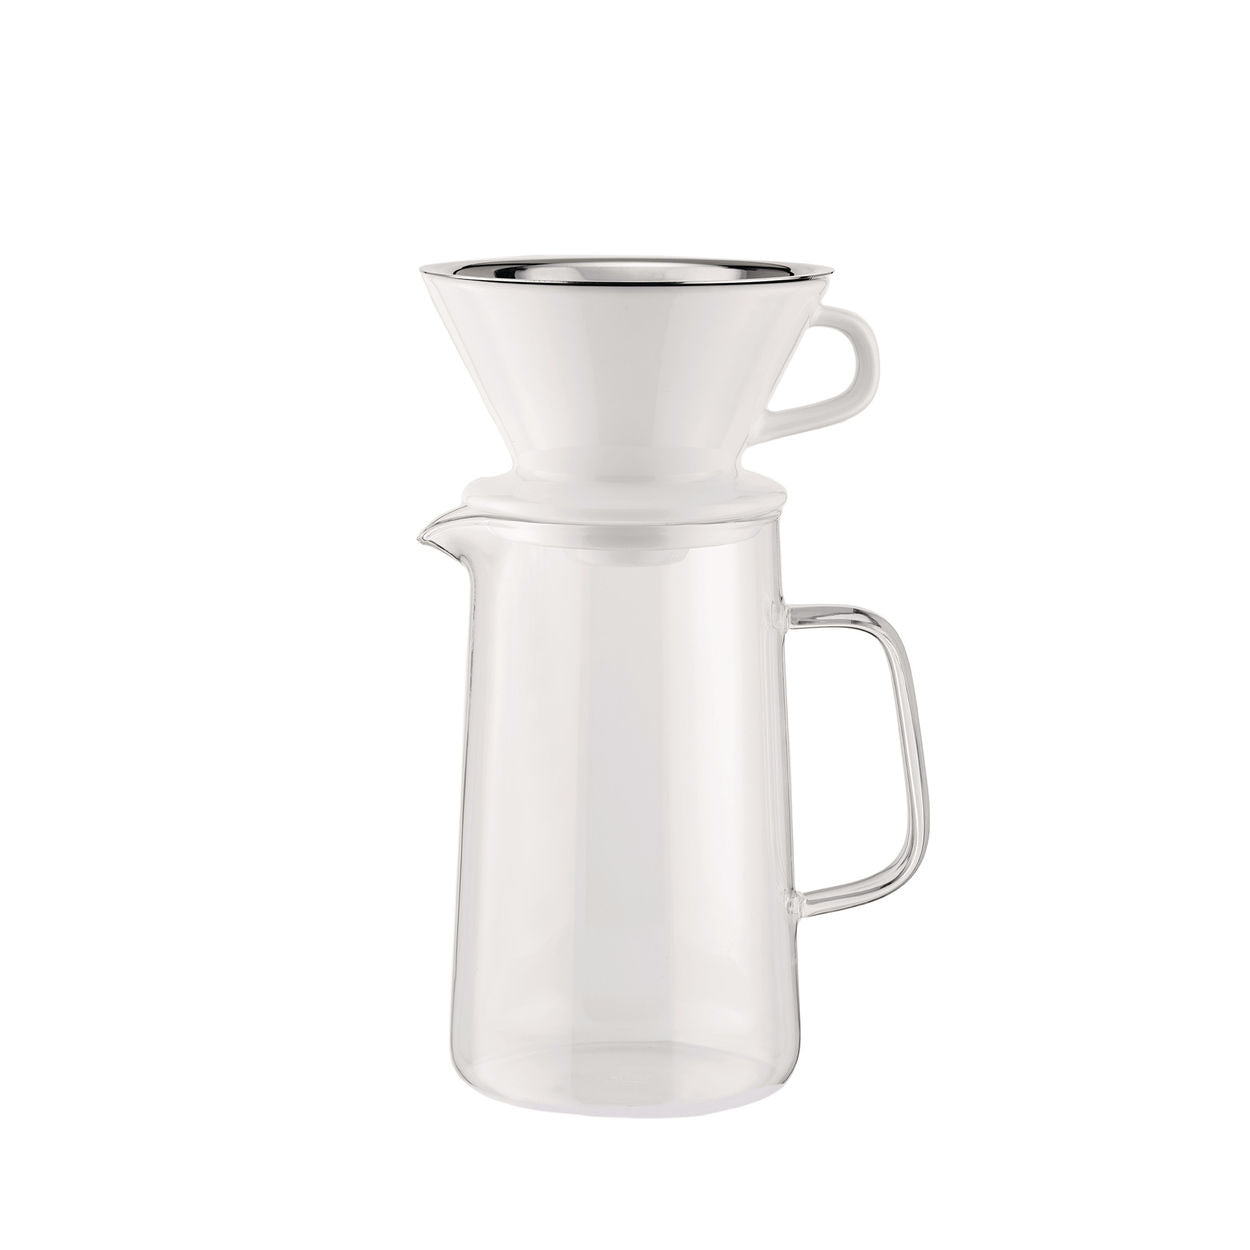 Alessi Café lent, accessoires pour moulin à café (cruche + filer net + porte-filtre)